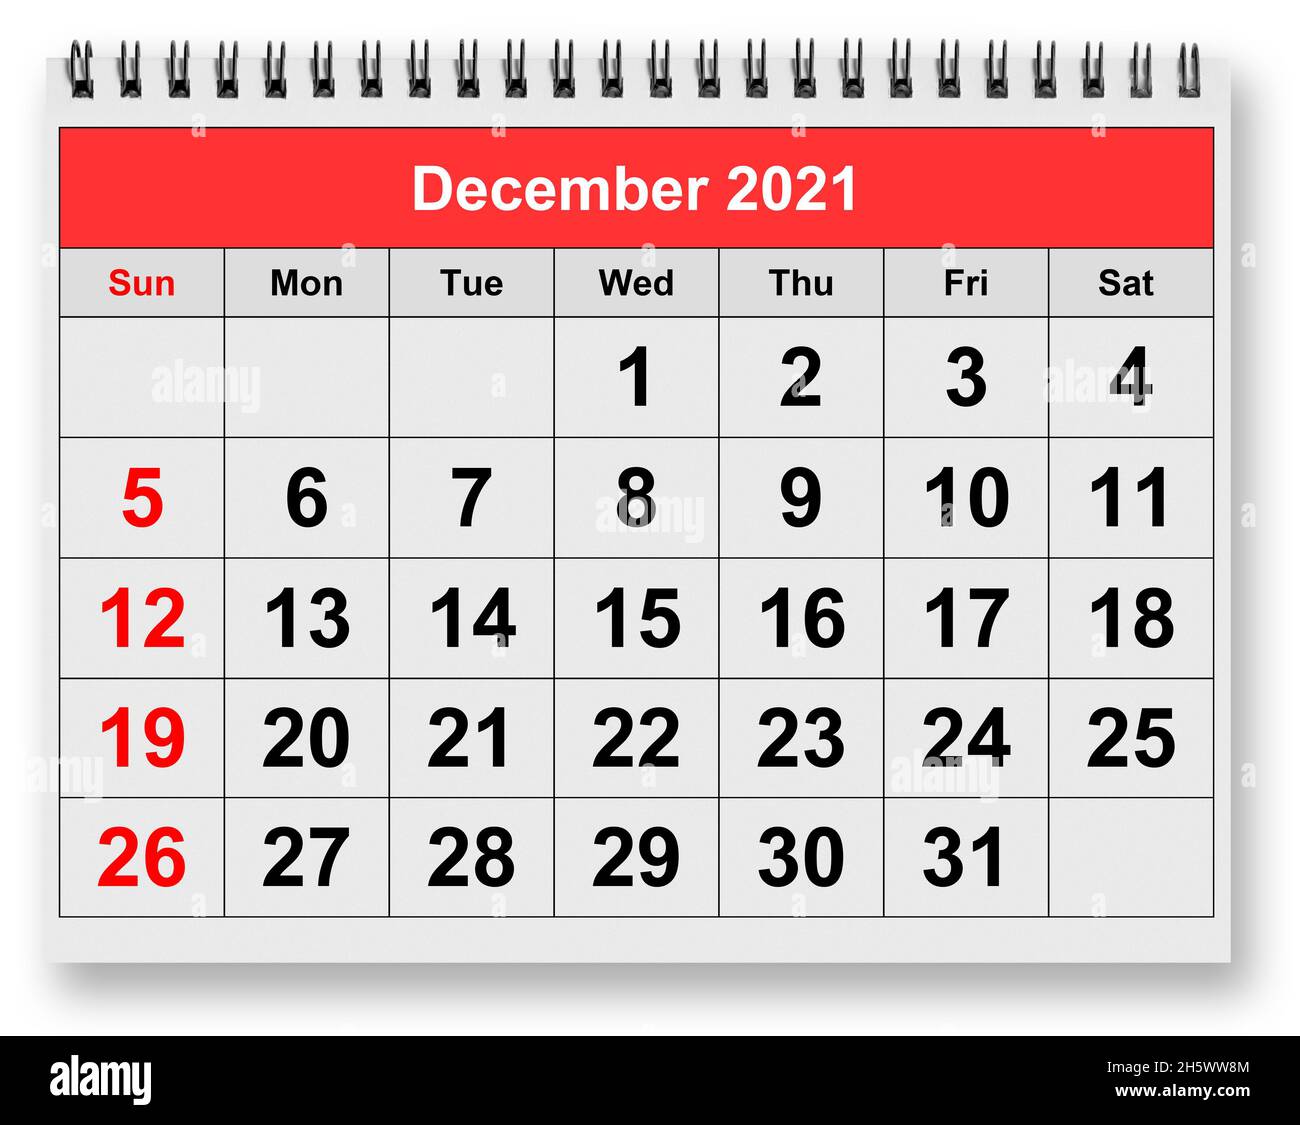 Calendario 2021 mensile immagini e fotografie stock ad alta risoluzione -  Alamy